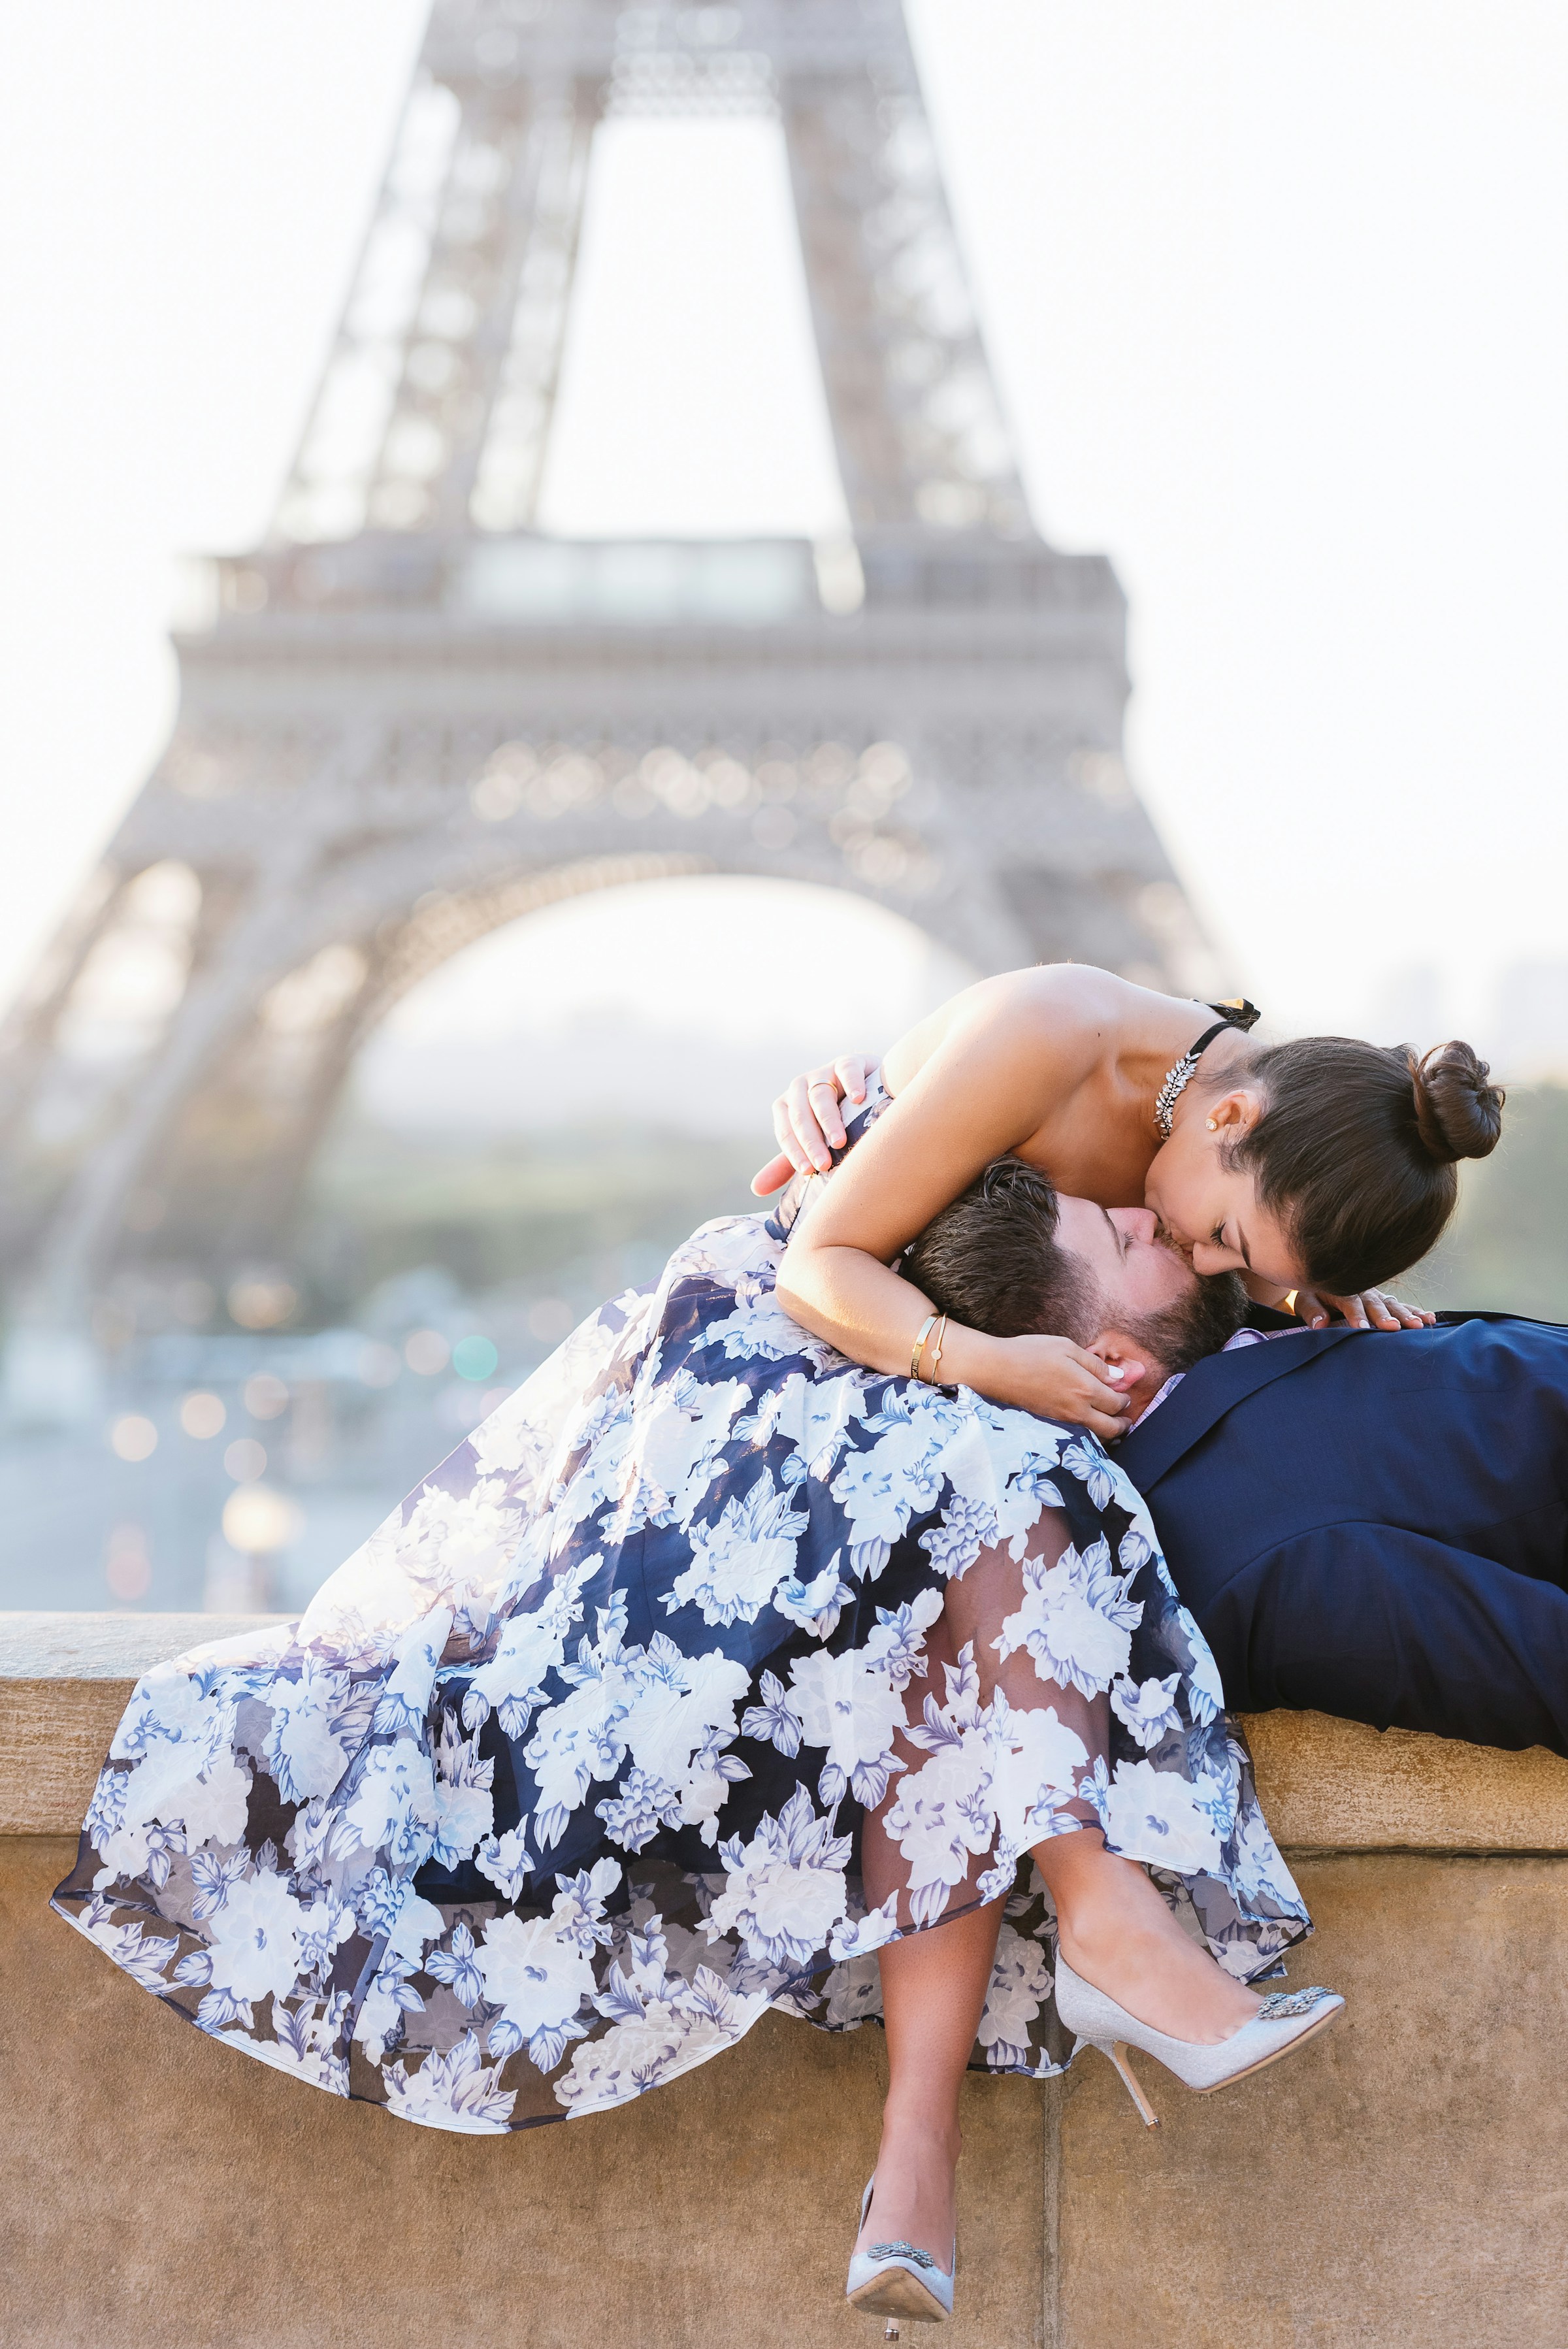 Una pareja besándose en una cornisa frente a la Torre Eiffel de París | Fuente: Unsplash